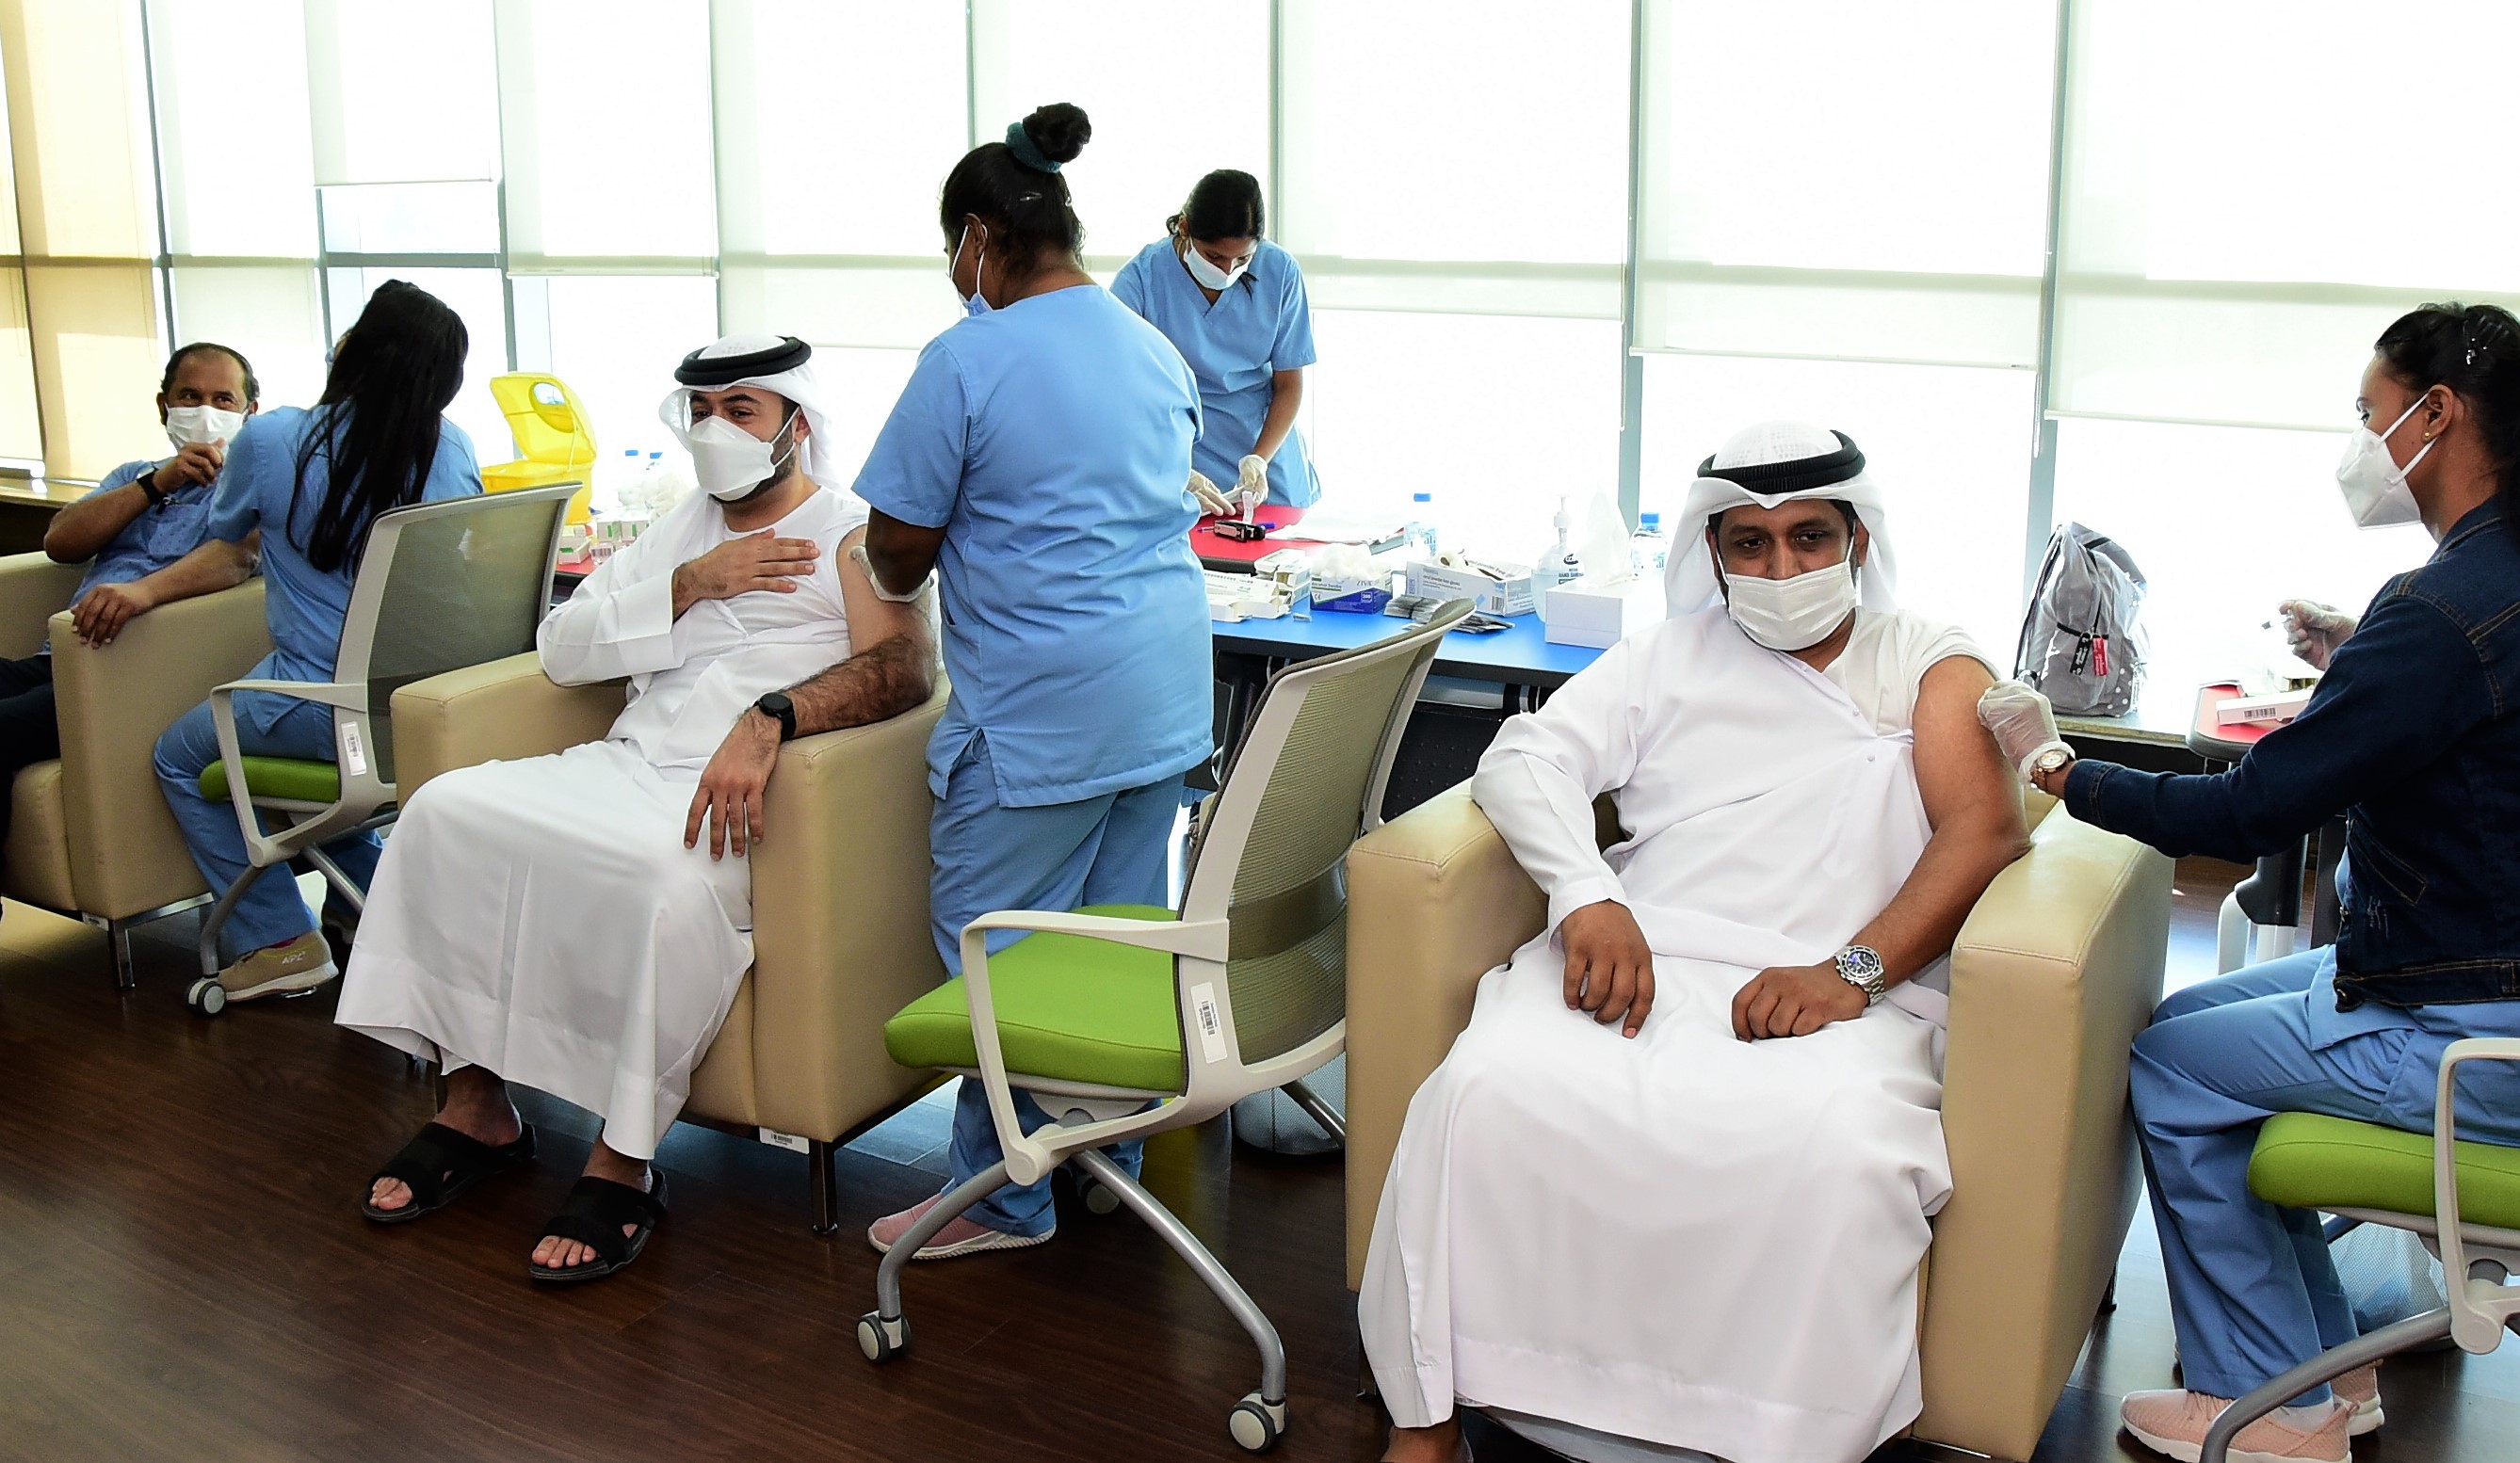 مجموعة بريد الإمارات تطلق برنامجاً داخلياً للتطعيم